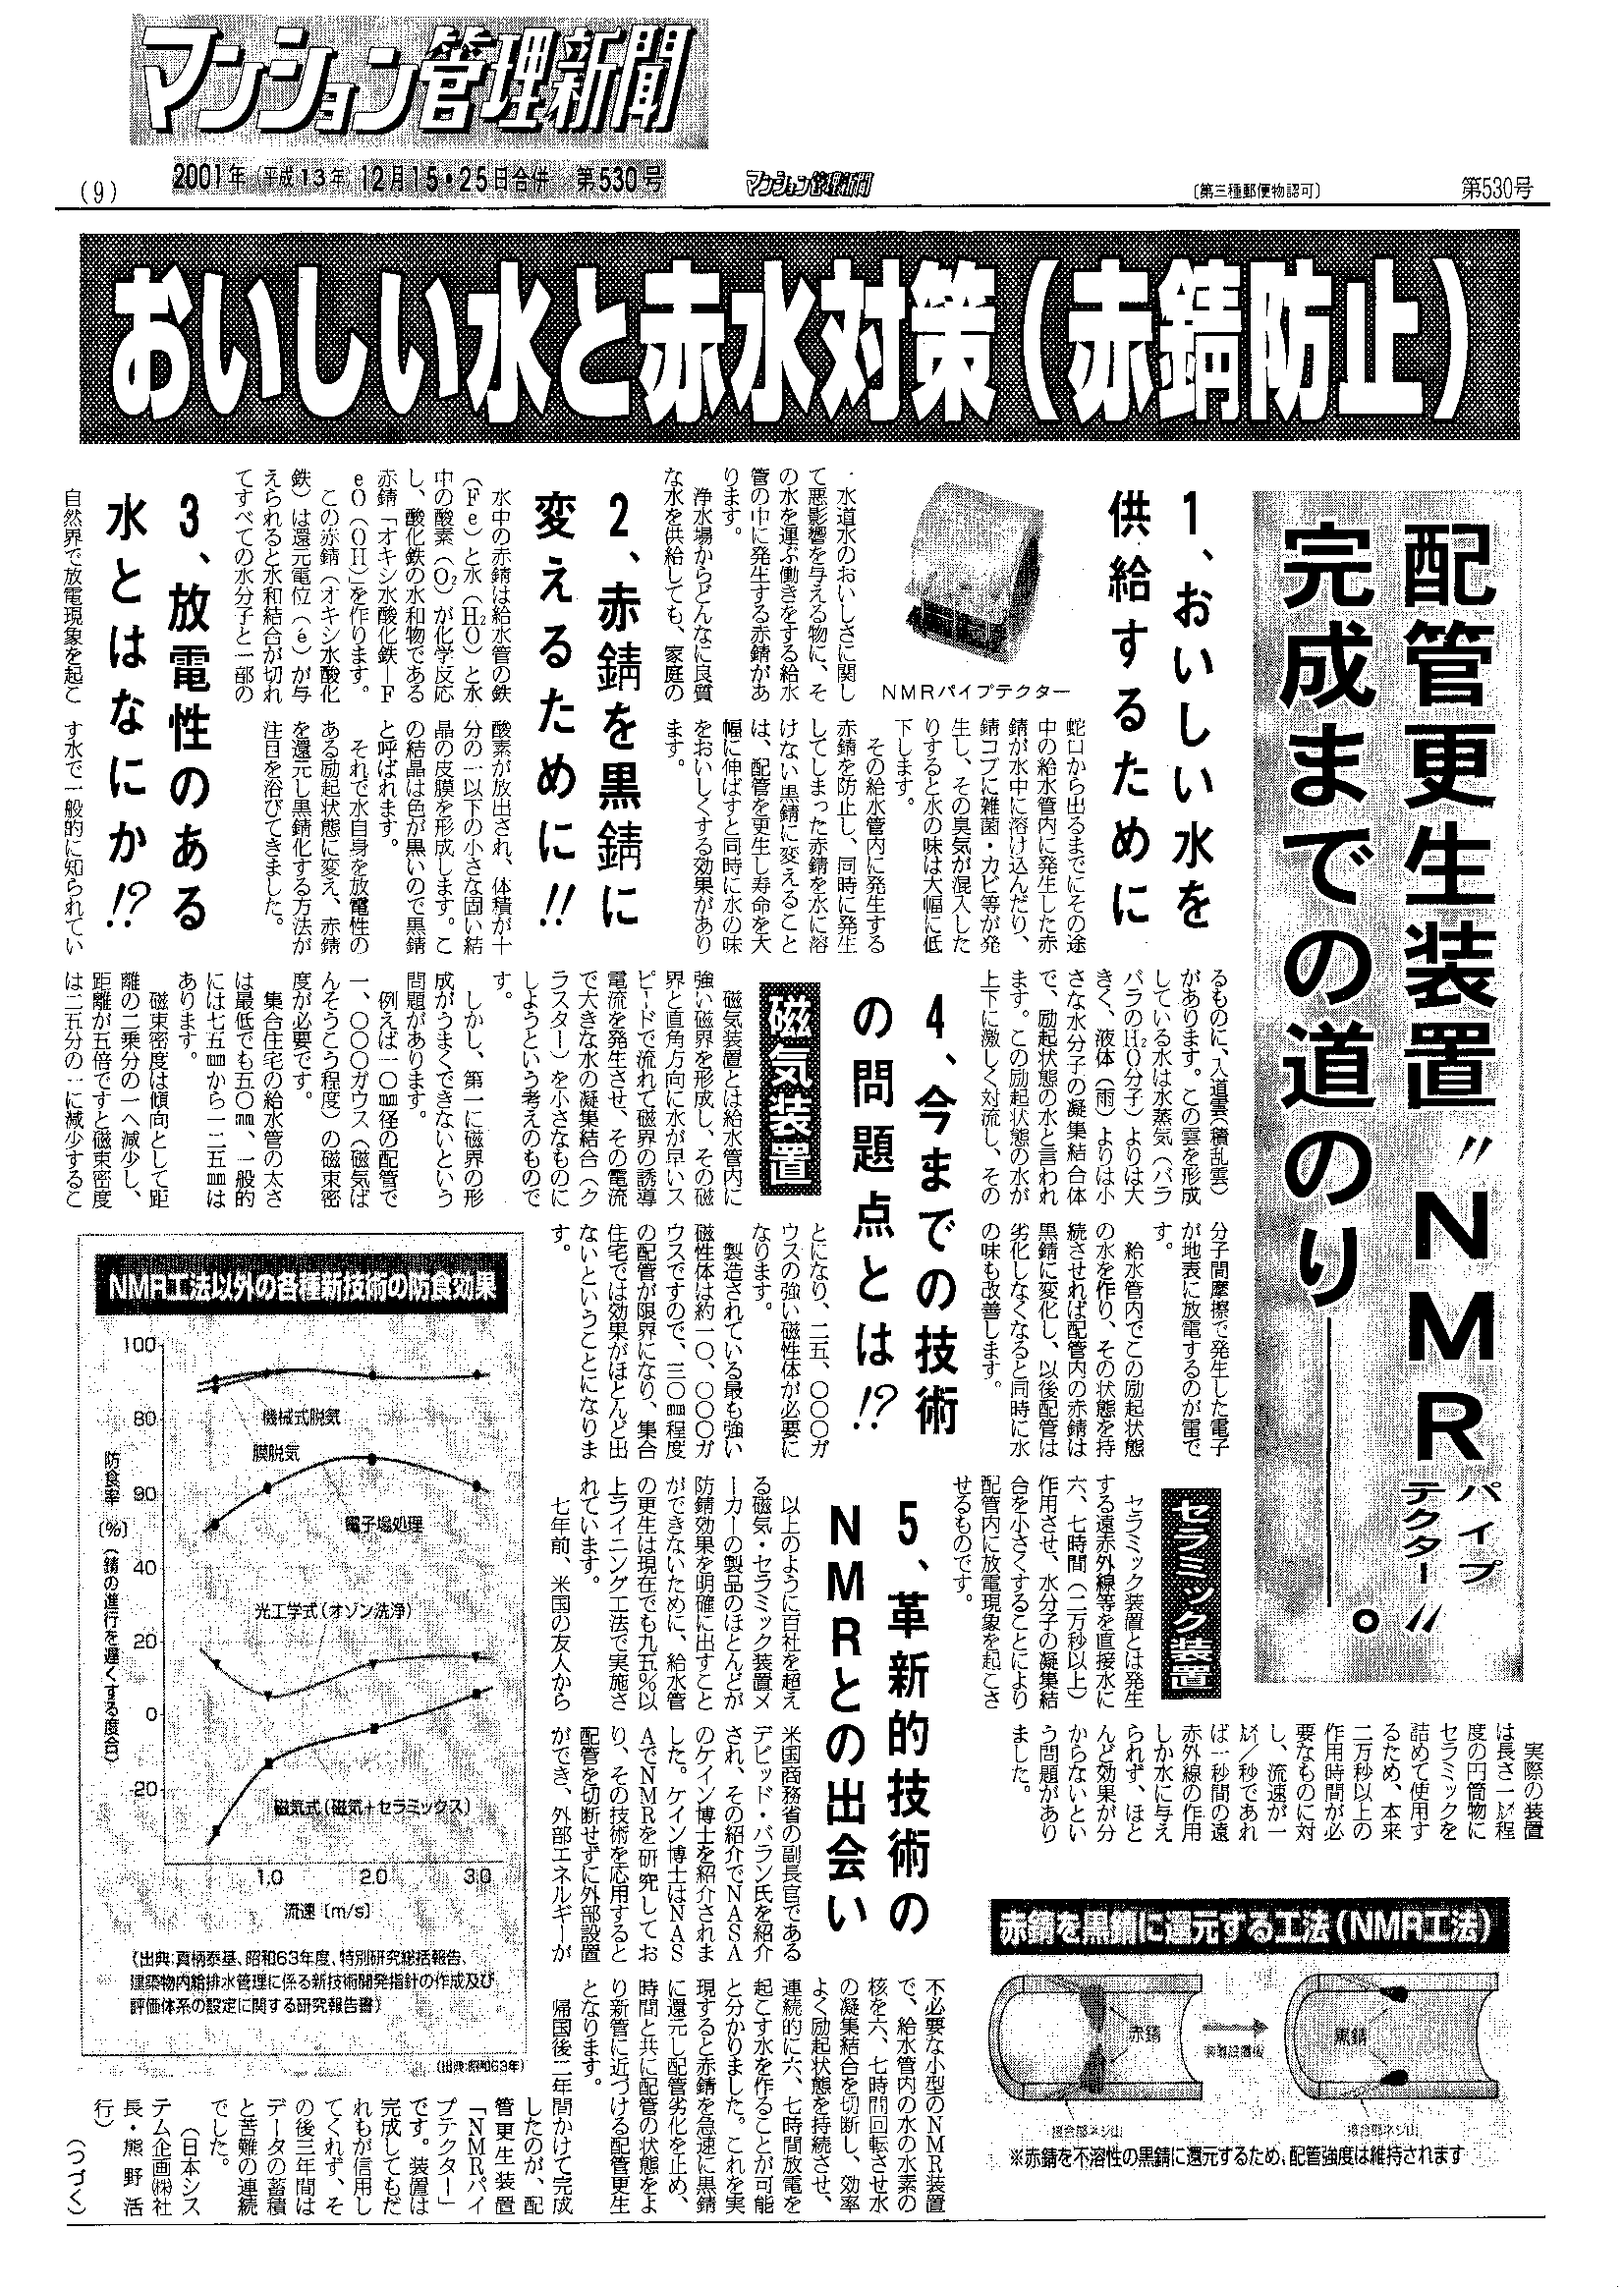 「マンション管理新聞」2001年12月15日 第530号